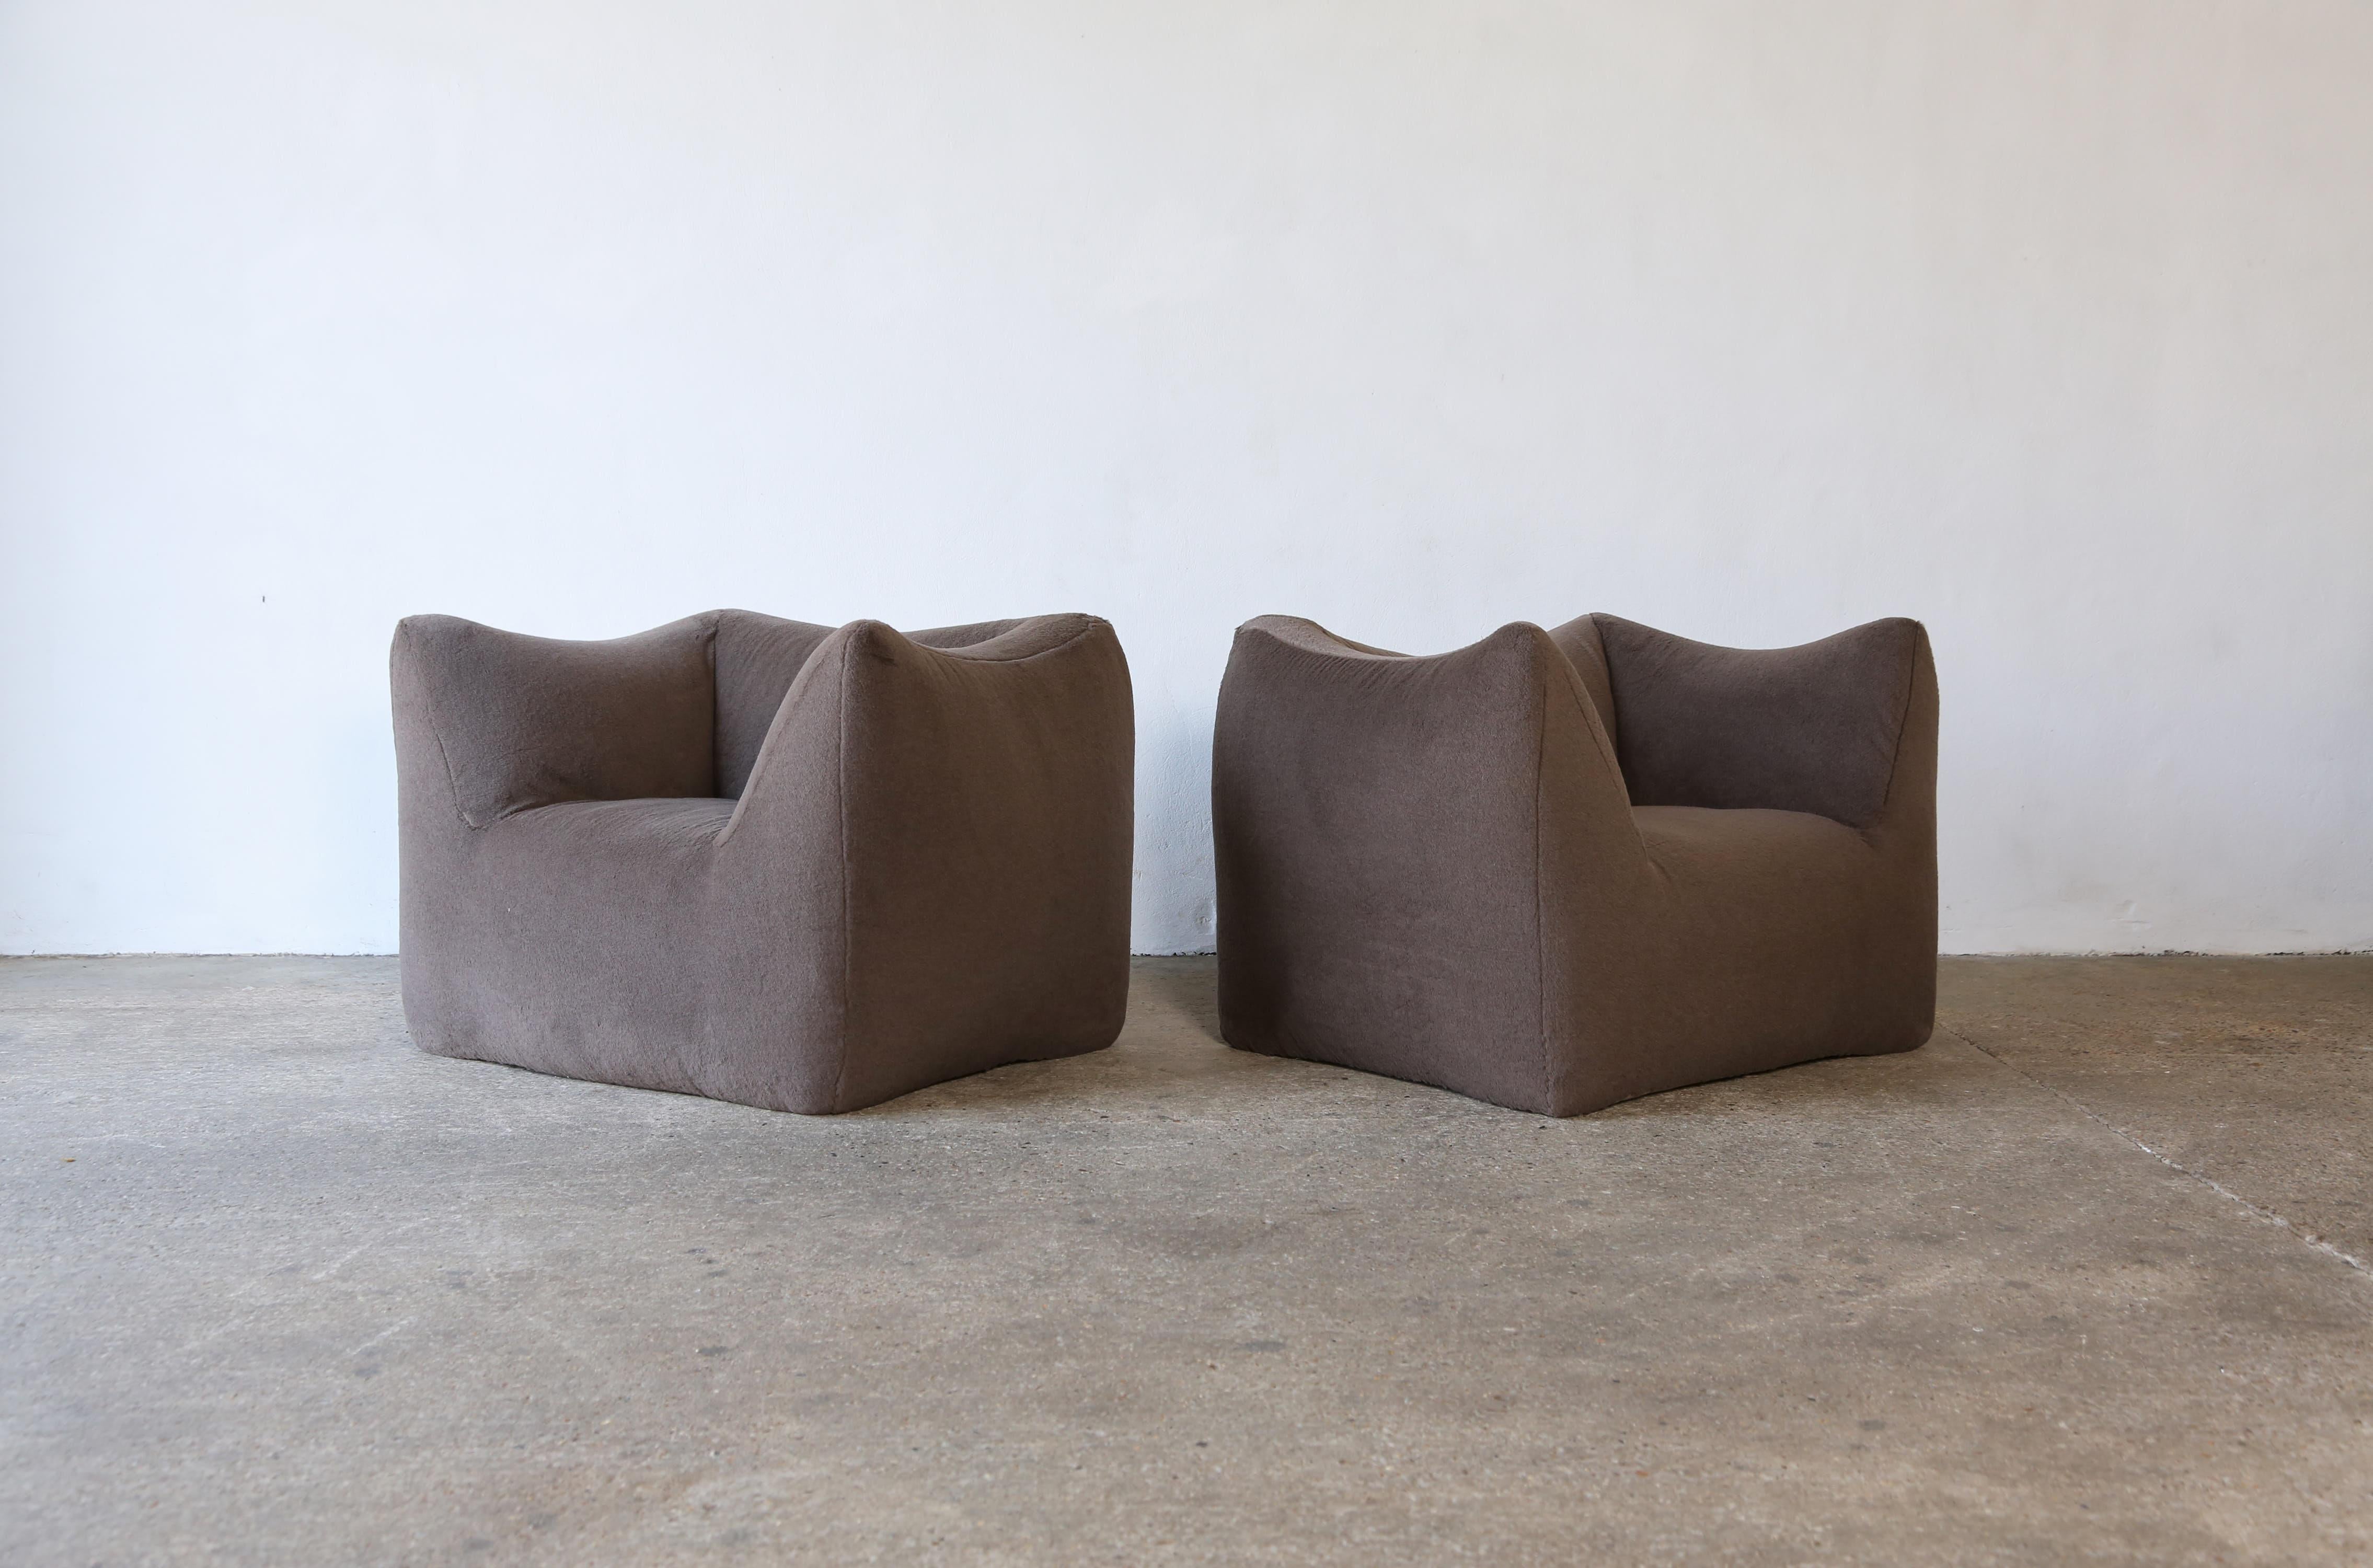 Ein schönes Paar Mario Bellini Le Bambole Lounge-Sessel, neu gepolstert in einem Premium-braun / grau 100% Alpaka Stoff, produziert von B&B Italia, Italien in den 1970er Jahren. Schneller Versand weltweit.



